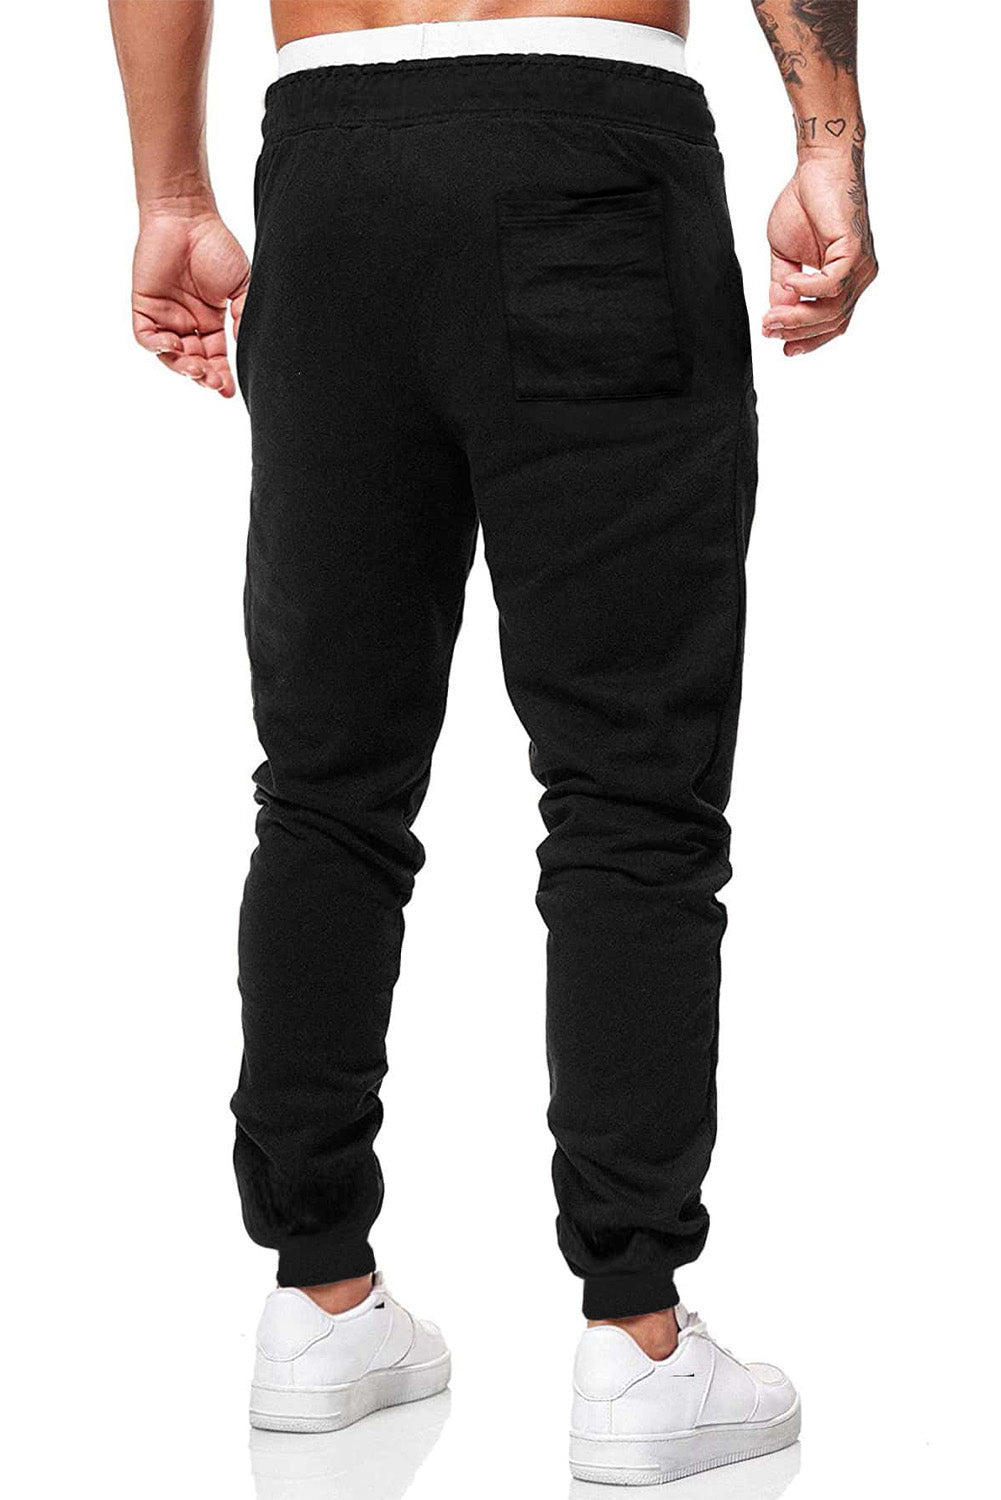 Black LET'S GO Graphic Print Drawstring Waist Men's Sweatpants Men's Pants JT's Designer Fashion